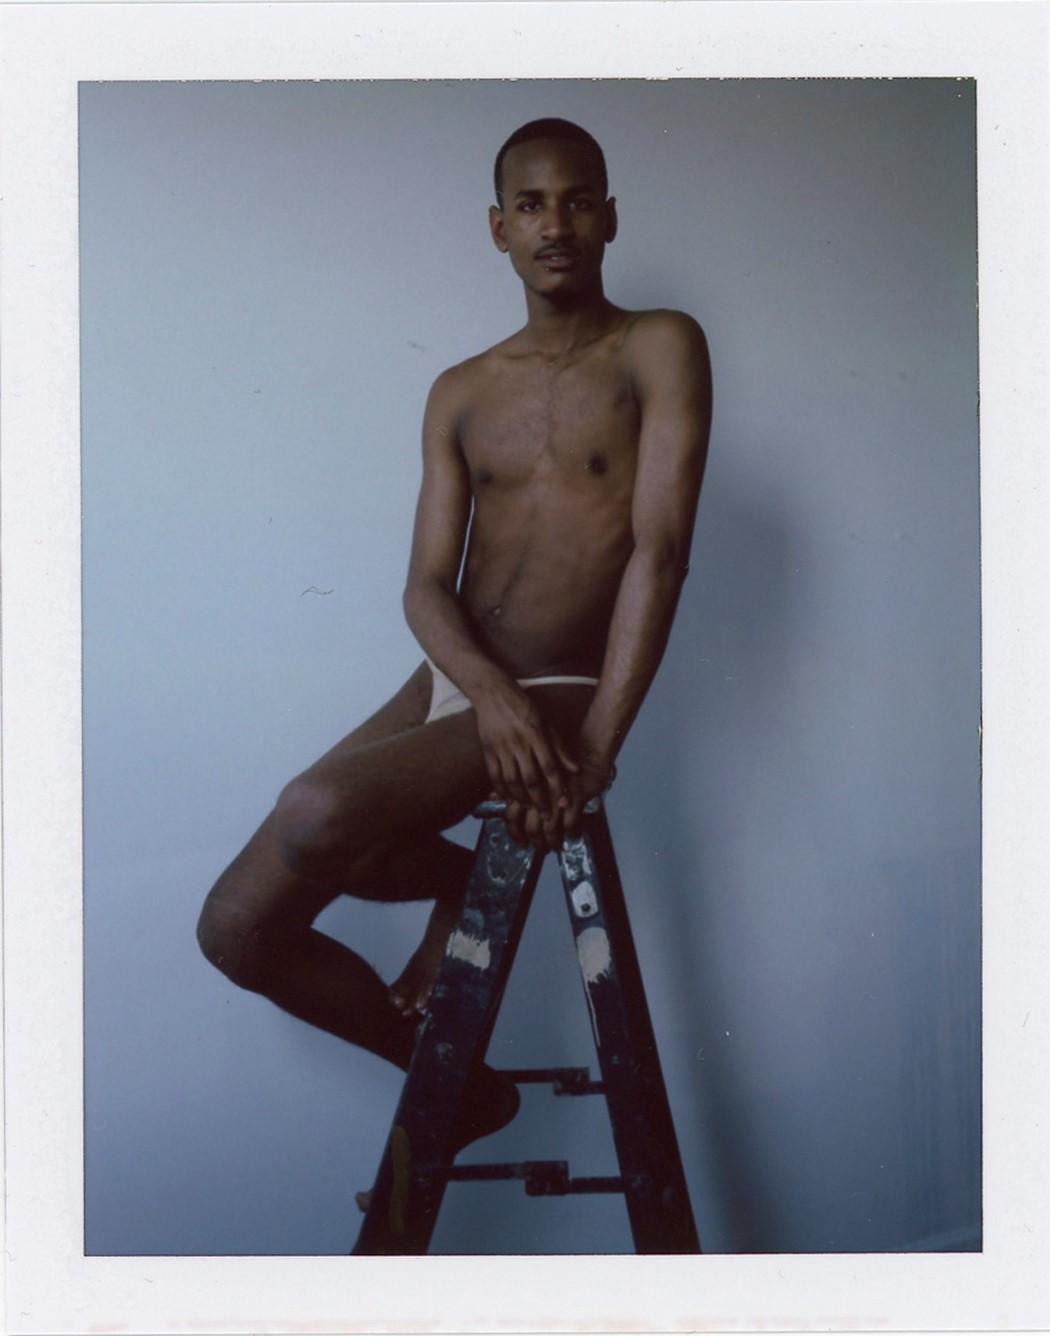 Ben Frederickson male nude photography Polaroid